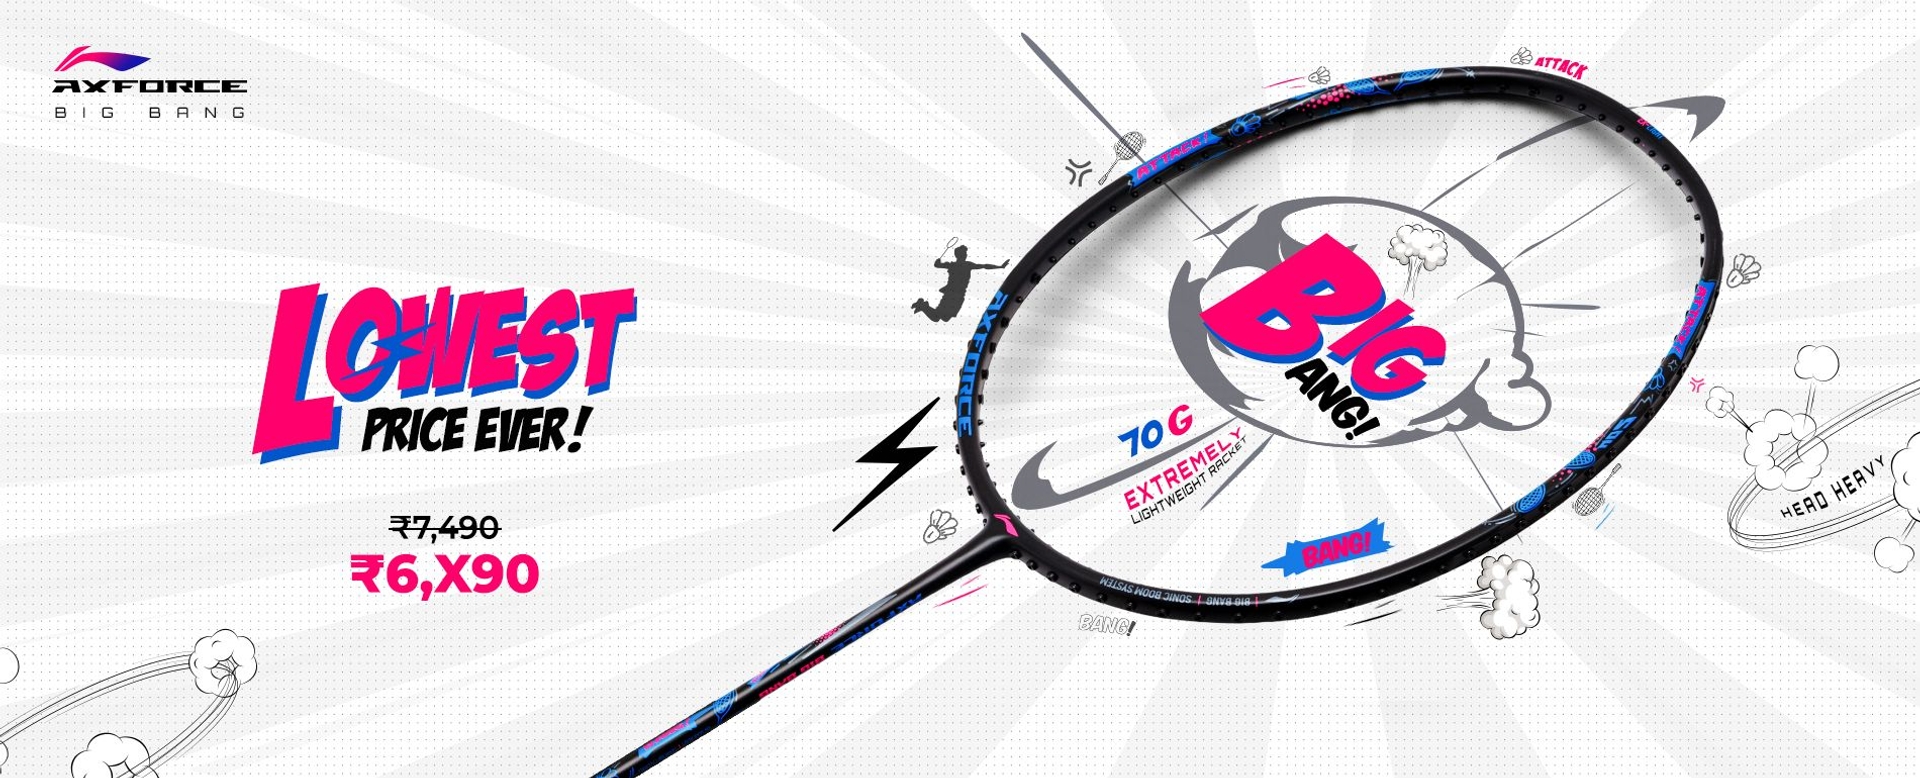 Axforce BigBang - Badminton Racket